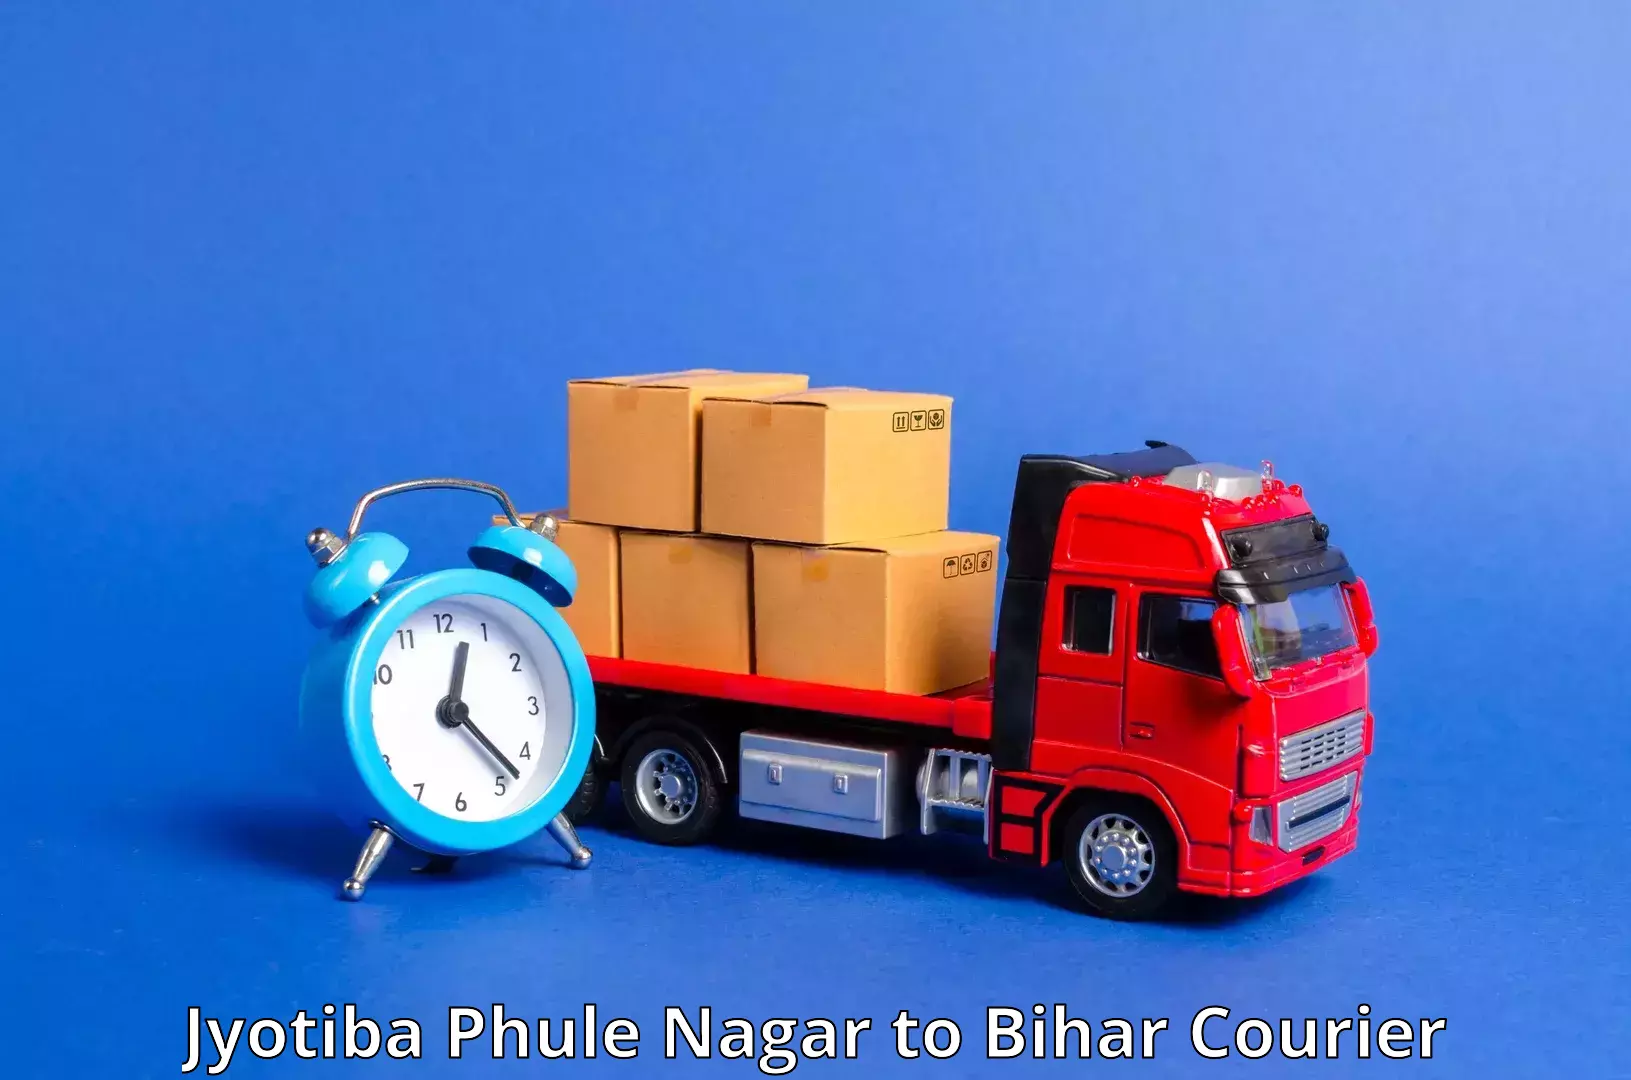 High-speed parcel service Jyotiba Phule Nagar to Phulparas